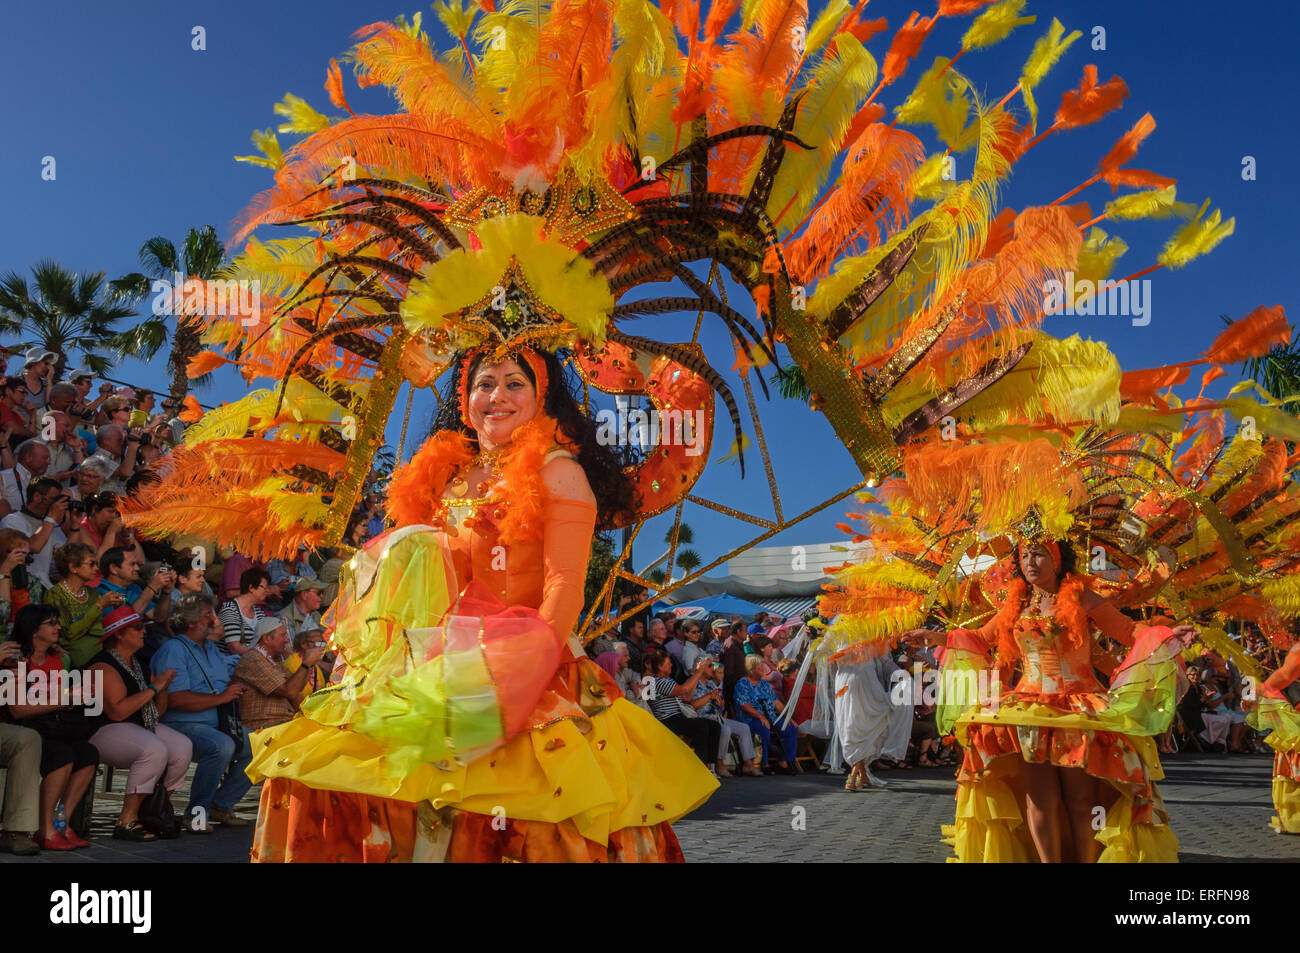 Mardi Gras carnival. Puerto de la Cruz. Tenerife. Spain. Stock Photo